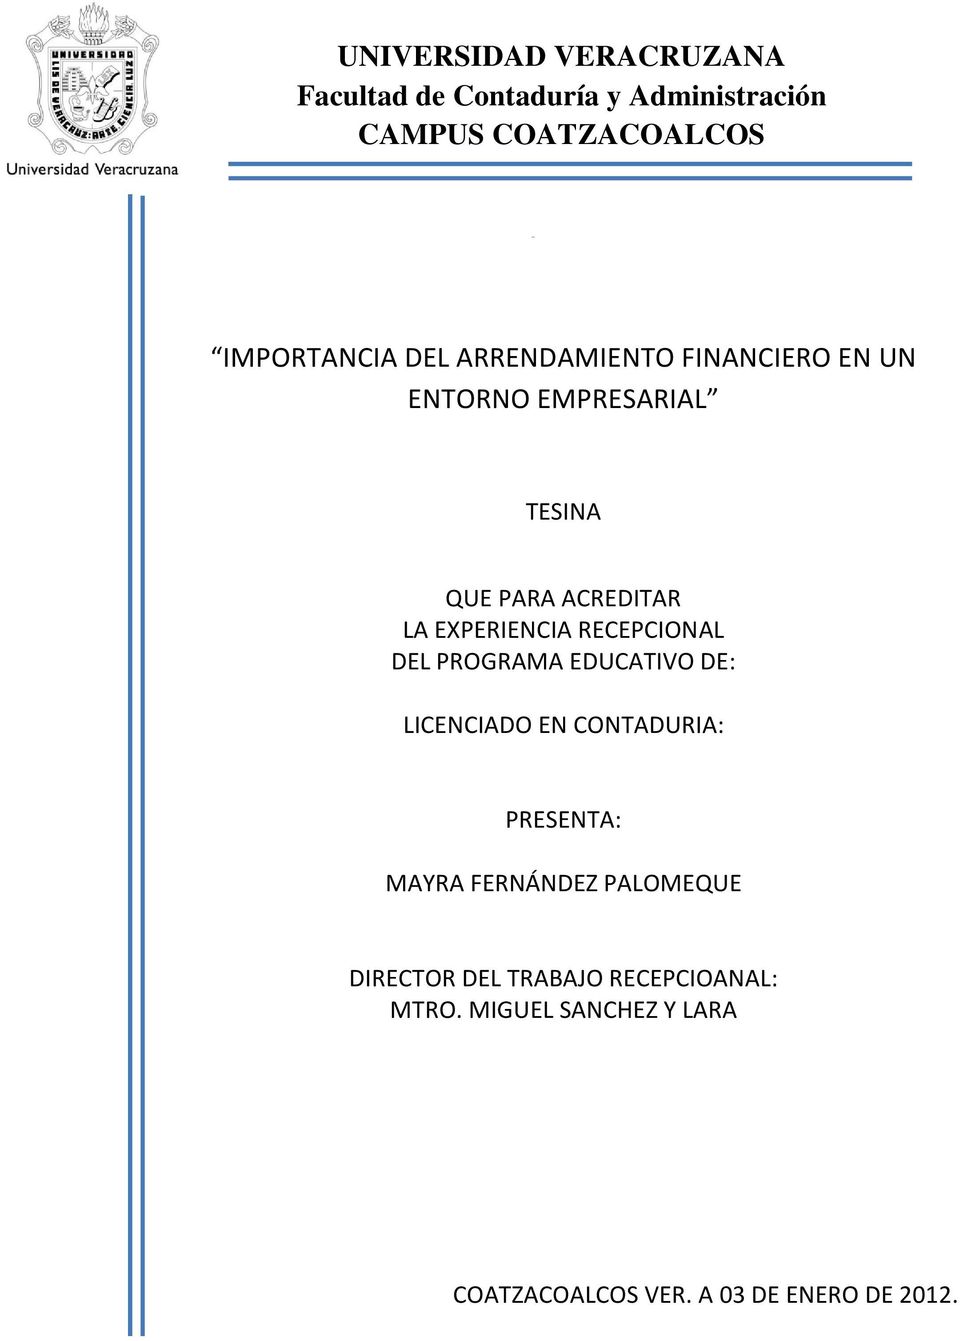 RECEPCIONAL DEL PROGRAMA EDUCATIVO DE: LICENCIADO EN CONTADURIA: PRESENTA: MAYRA FERNÁNDEZ